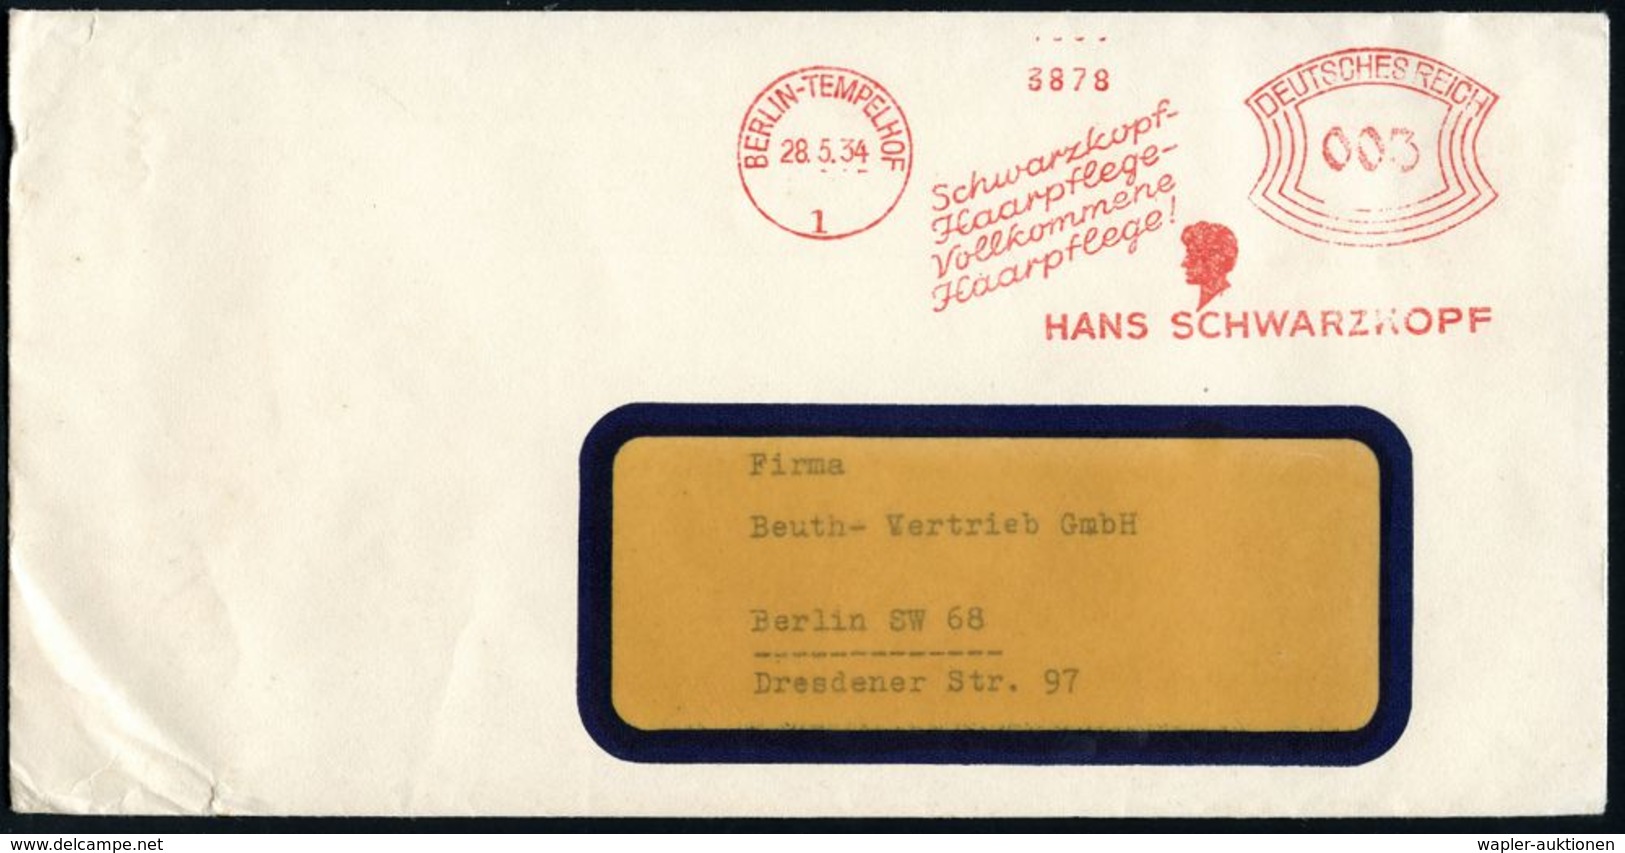 BERLIN-TEMPELHOF/ 1/ Schwarzkopf-/ Haarpflege-../ HANS SCHWARZKOPF 1934 (28.5.) AFS = Kopfsilhouette (= Firmen-Logo) Kla - Apotheek